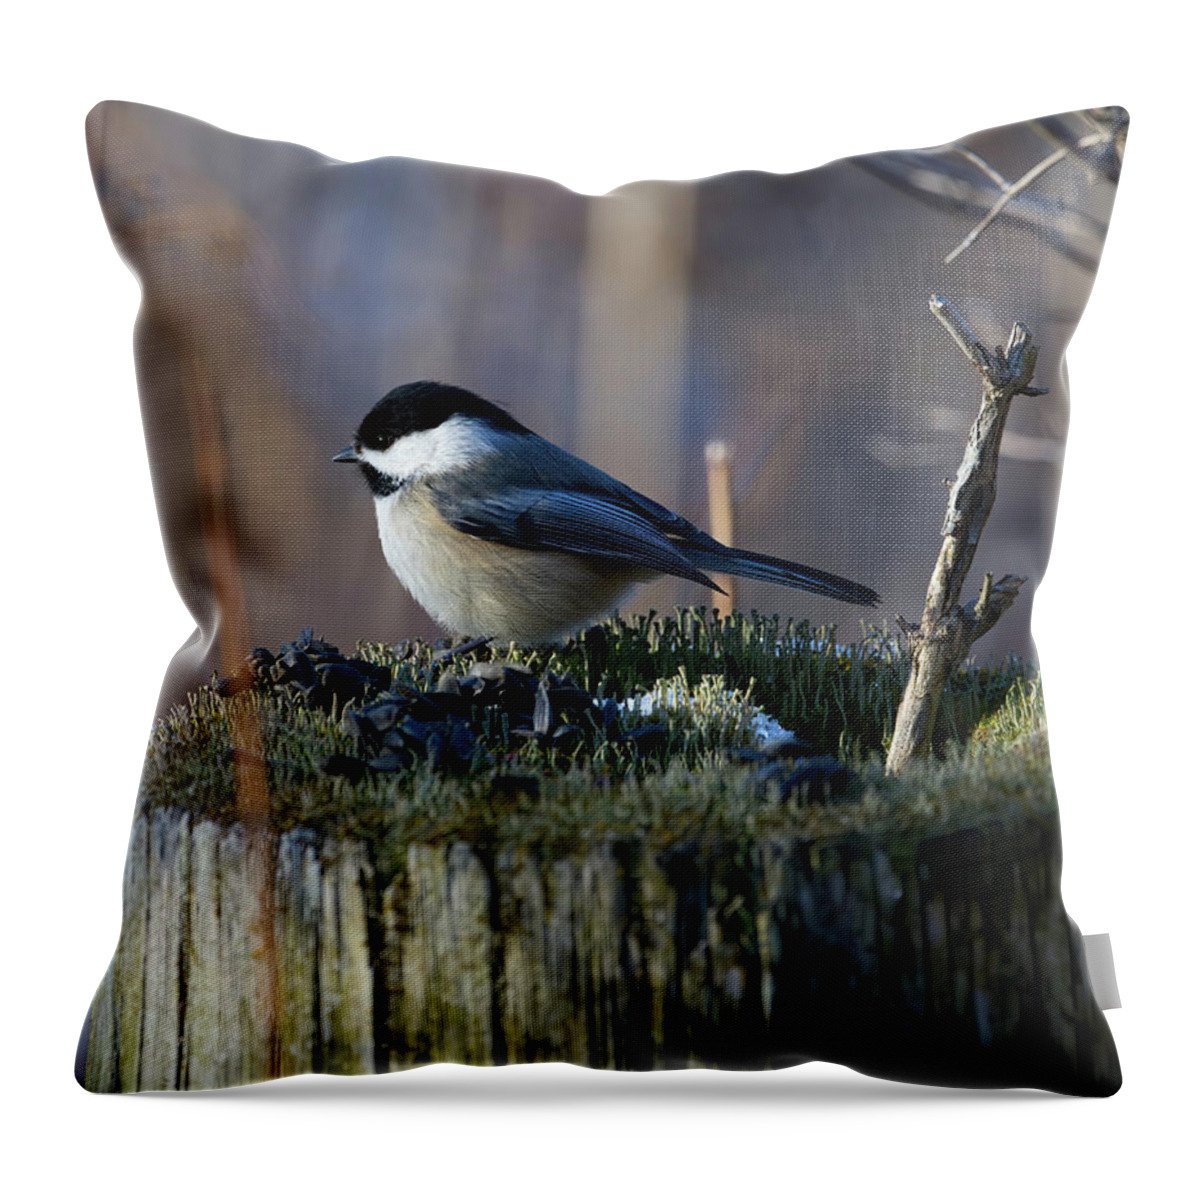 Bird Throw Pillow featuring the photograph Chickadee on a Stump by Flinn Hackett